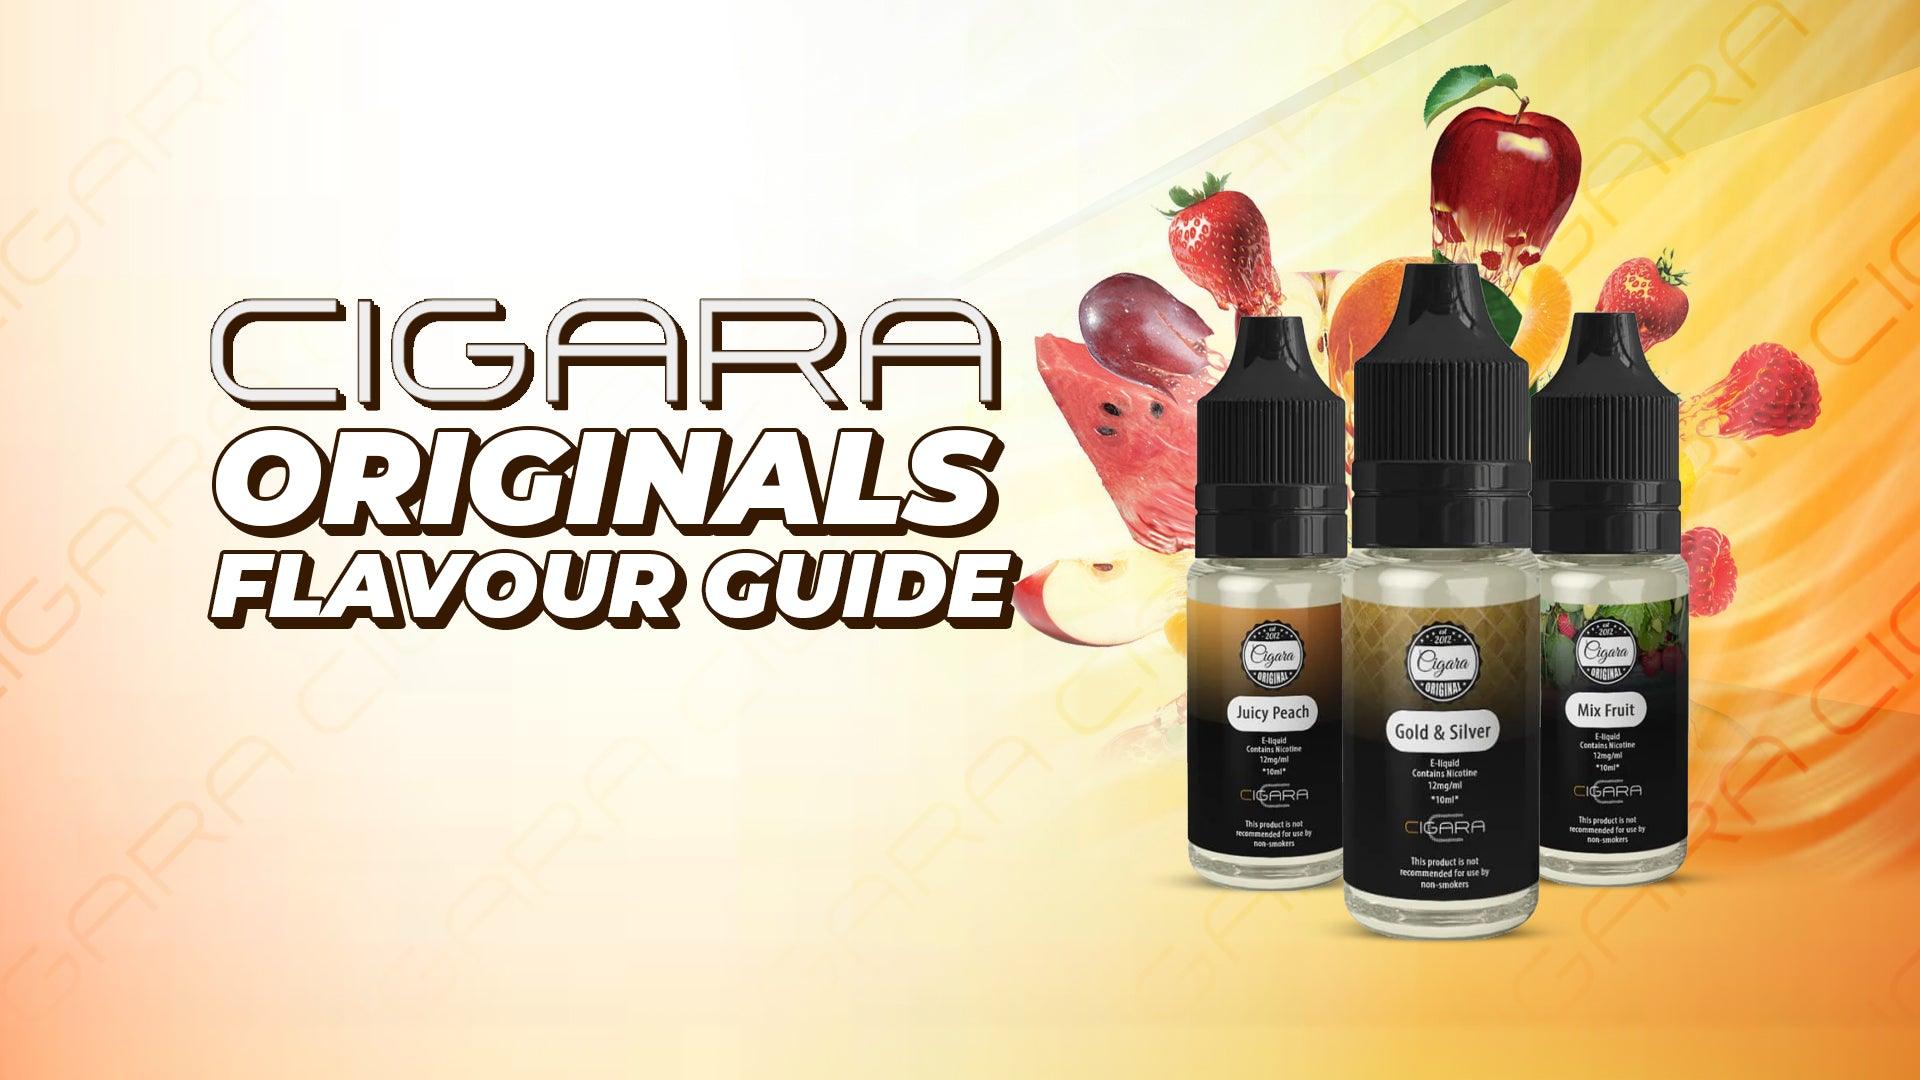 Cigara Originals Flavour Guide - Brand:Cigara Originals, Category:E-Liquids, Sub Category:Starter Liquids